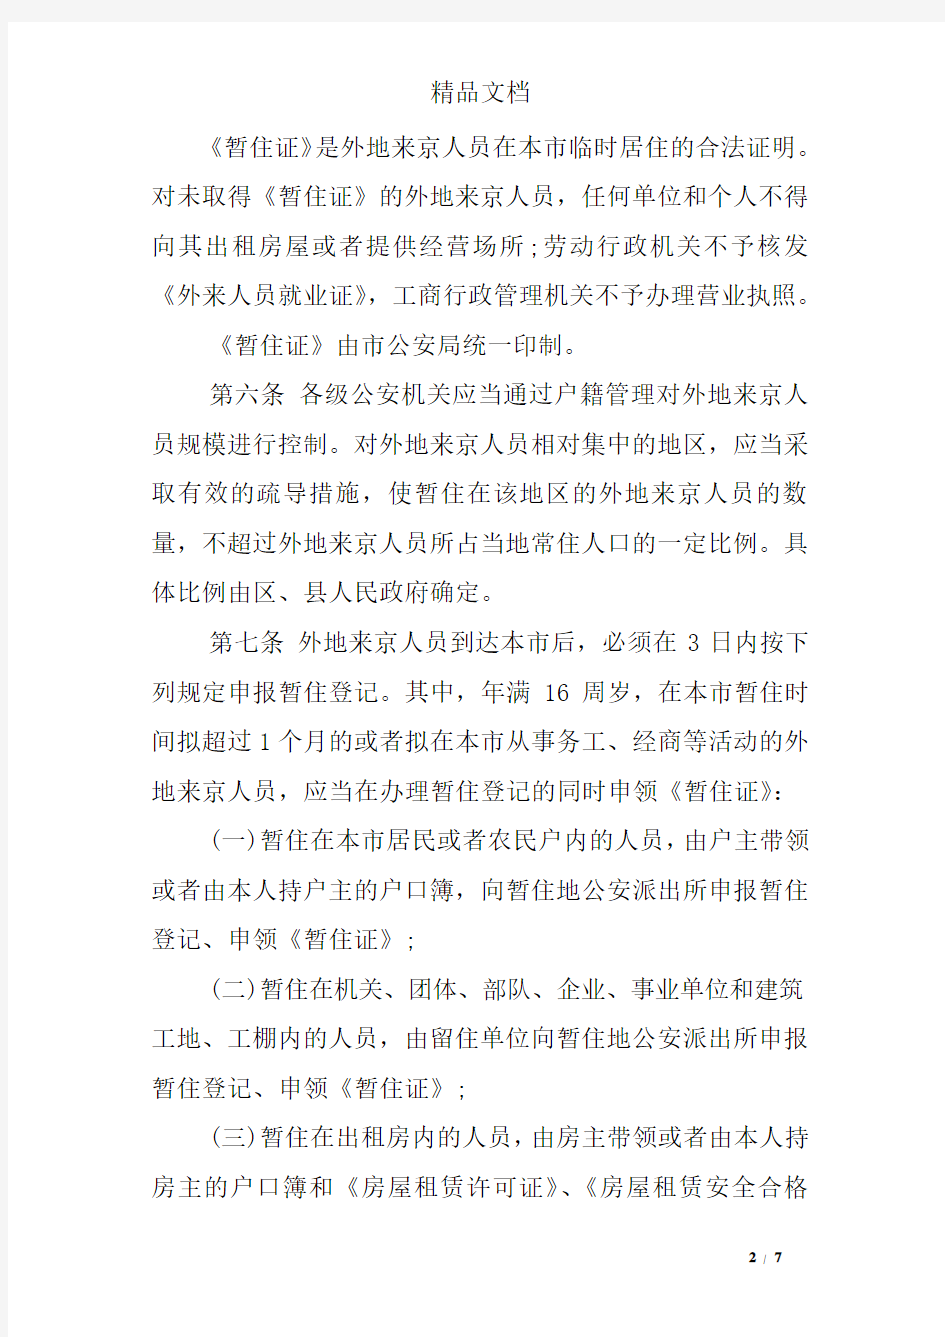 北京市公安局户籍管理规定